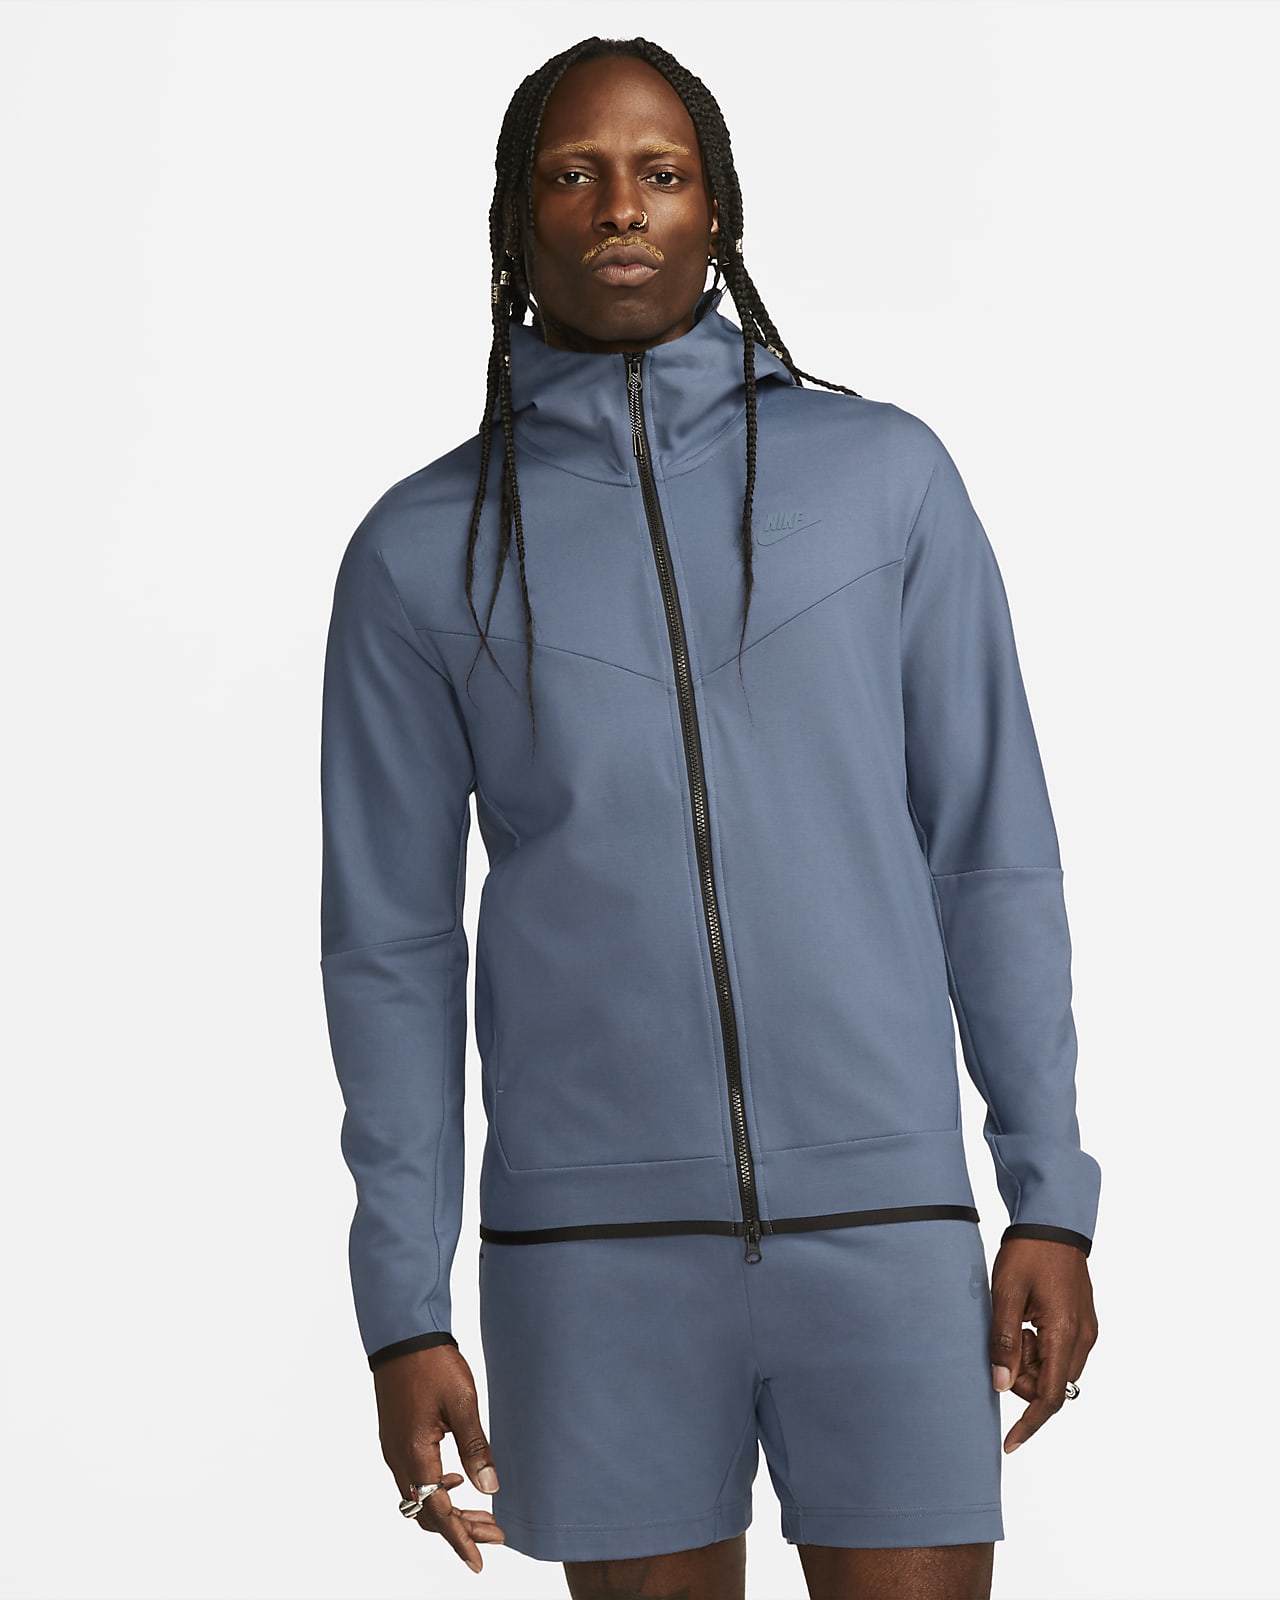 Vergissing krijgen Ontslag Nike Sportswear Tech Fleece Lightweight hoodie met rits voor heren. Nike BE